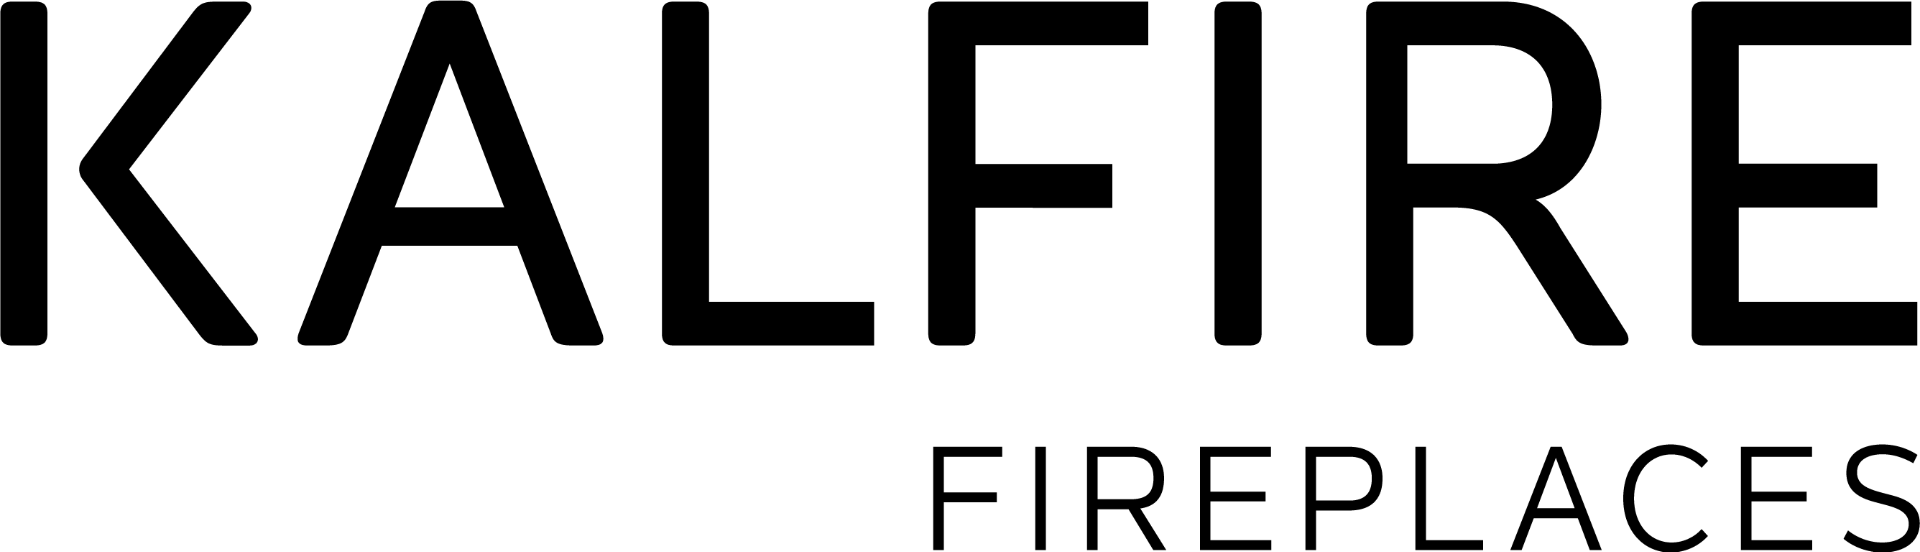 Kalfire logo